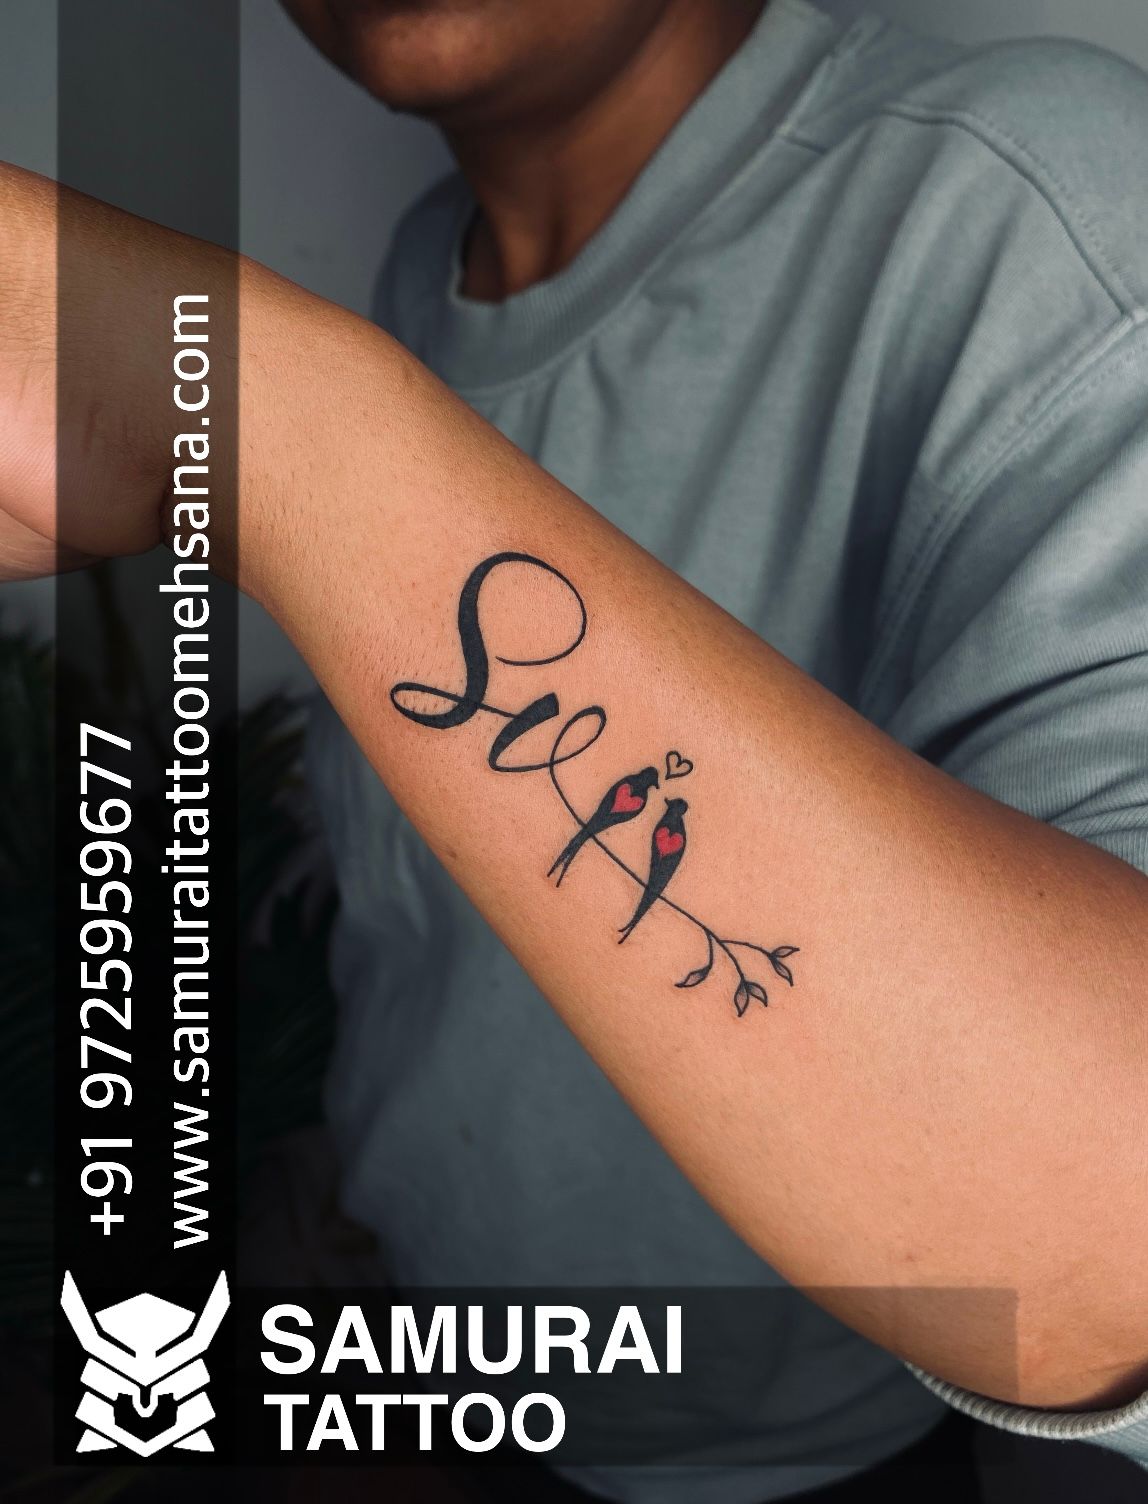 SV Letter Tattoo  Myna Tattoo Studio Bangalore  Call 9886650570 for  appointments  Tattoo lettering Tattoos Tattoo studio